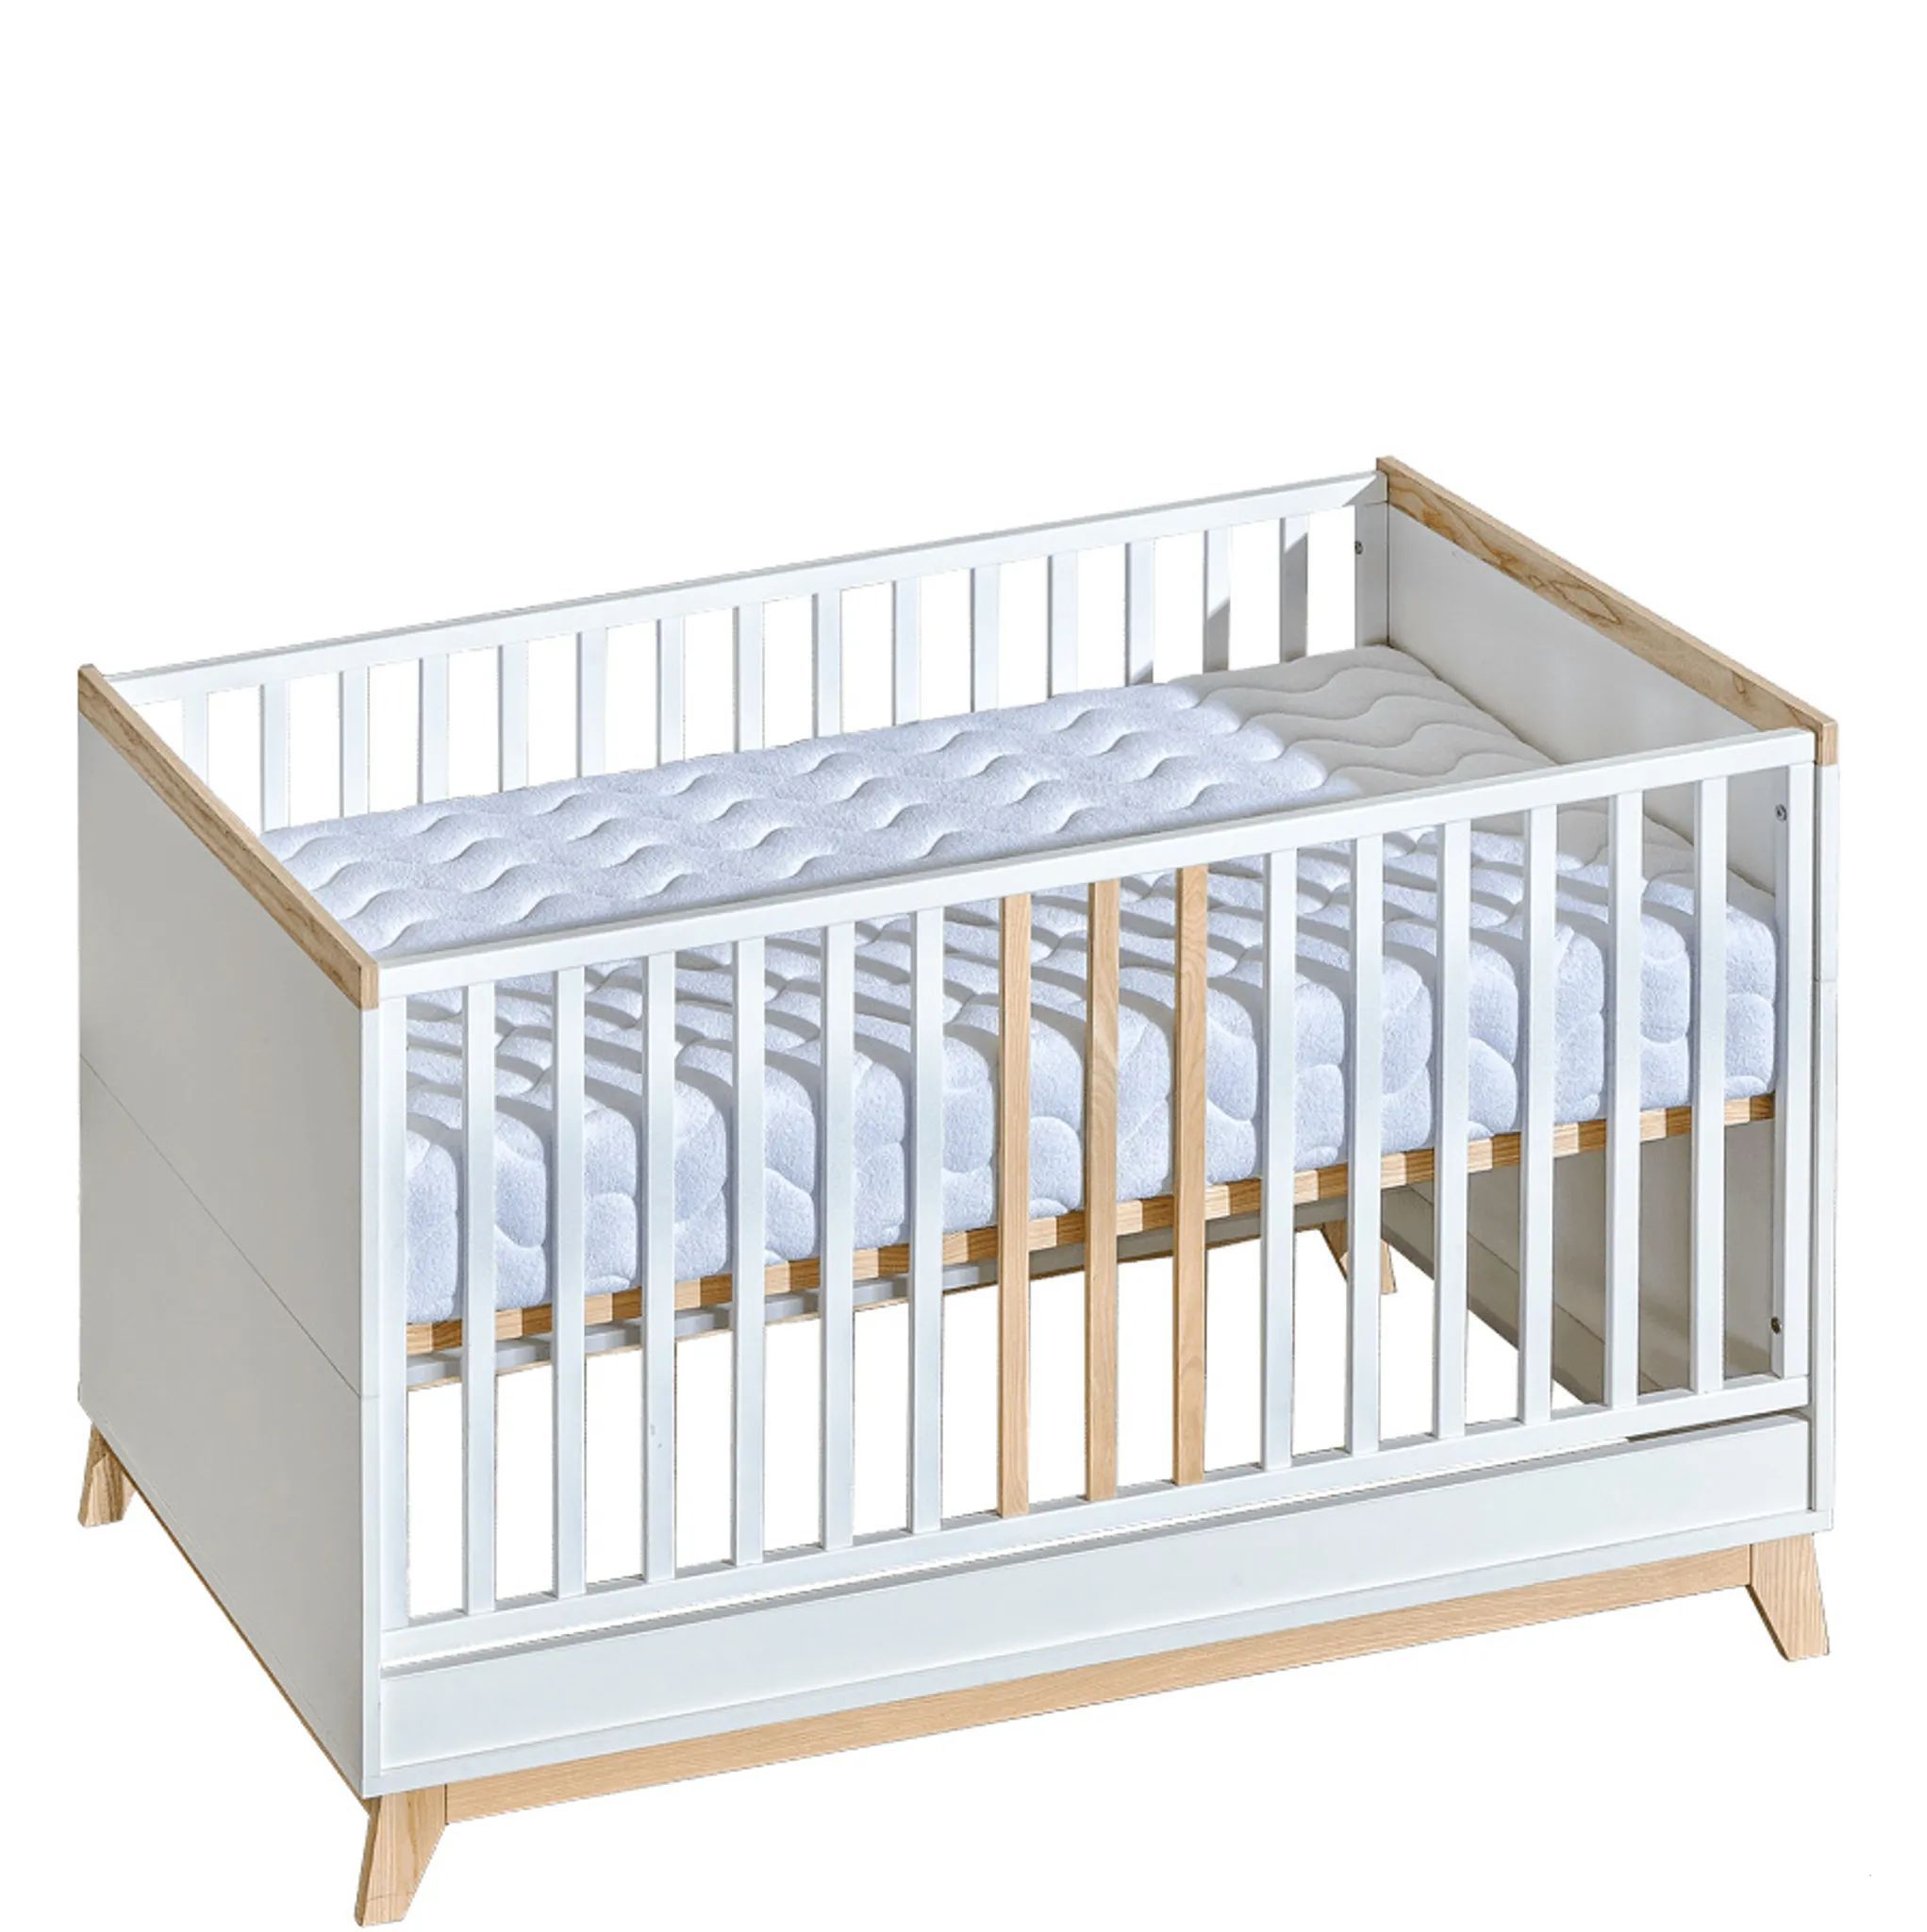 ATB MEBLE Babybett , Nordik KOLLEKTION , Beistellbett Baby , Bett Baby Mitwachsend , Kinderbett umbaubar , 4 Ebenen der Matratzenhöhe 140×70 cm , Weiß